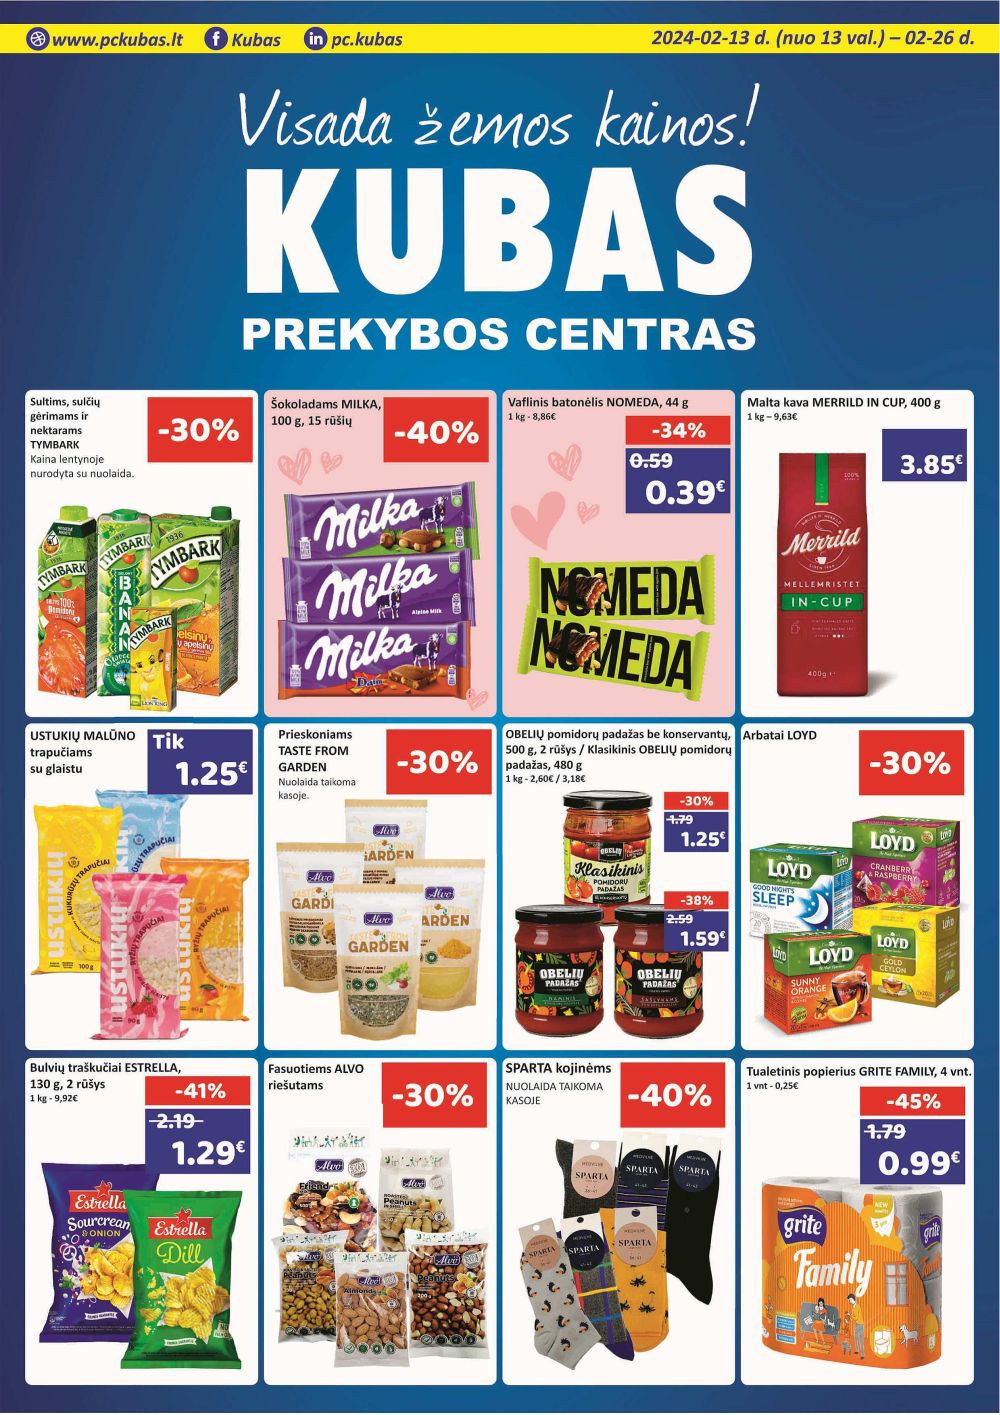 kubas - KUBAS (2024 02 13 - 2024 02 26) - page: 1